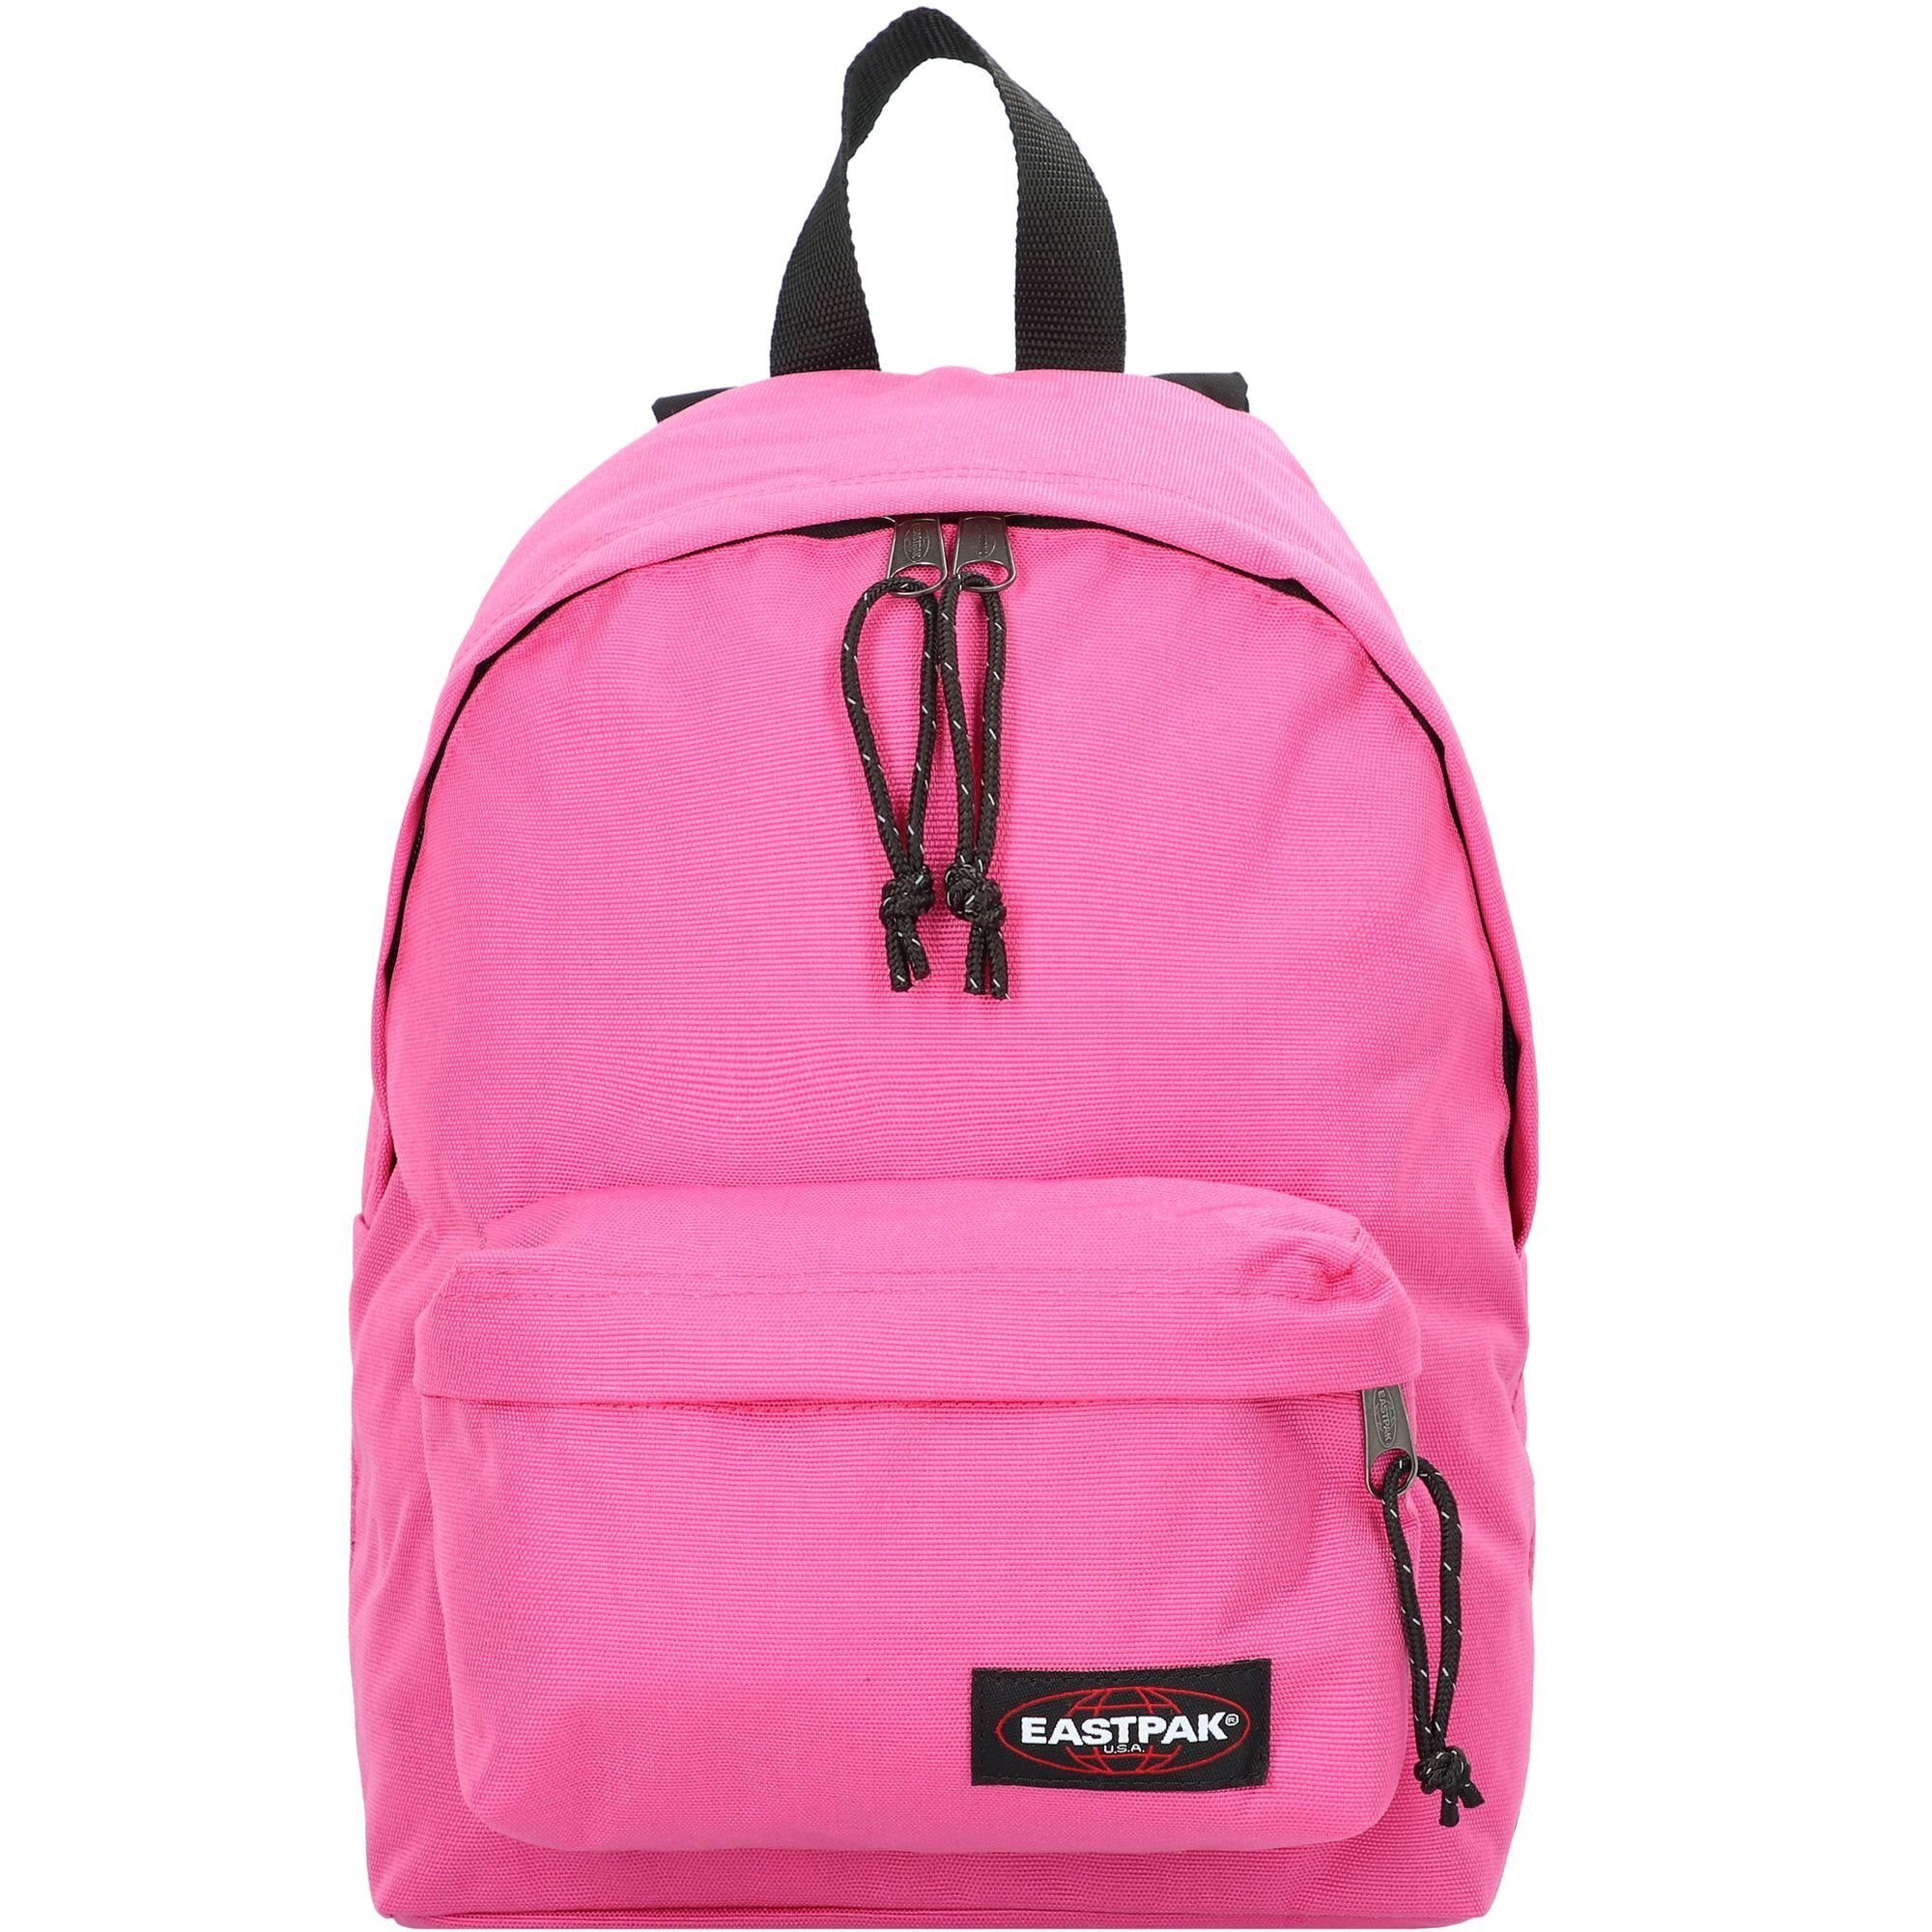 Eastpak Minirucksack ORBIT Pink Escape, 10 L kleiner Rucksack mit  gepolsterten Rückenteil rosa